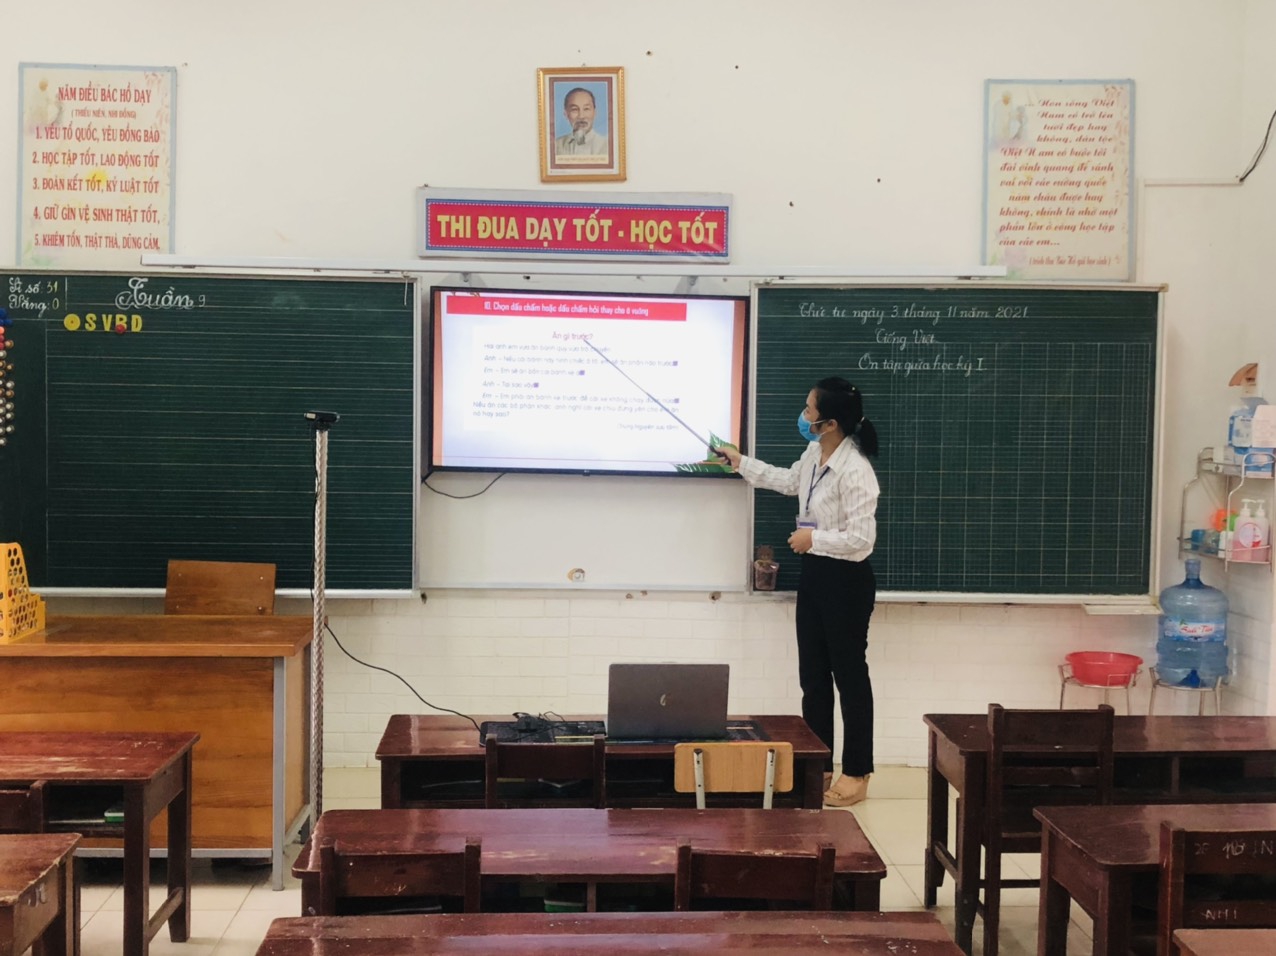 Bắc Giang: Huyện Yên Thế dạy học trực tuyến từ 15/11